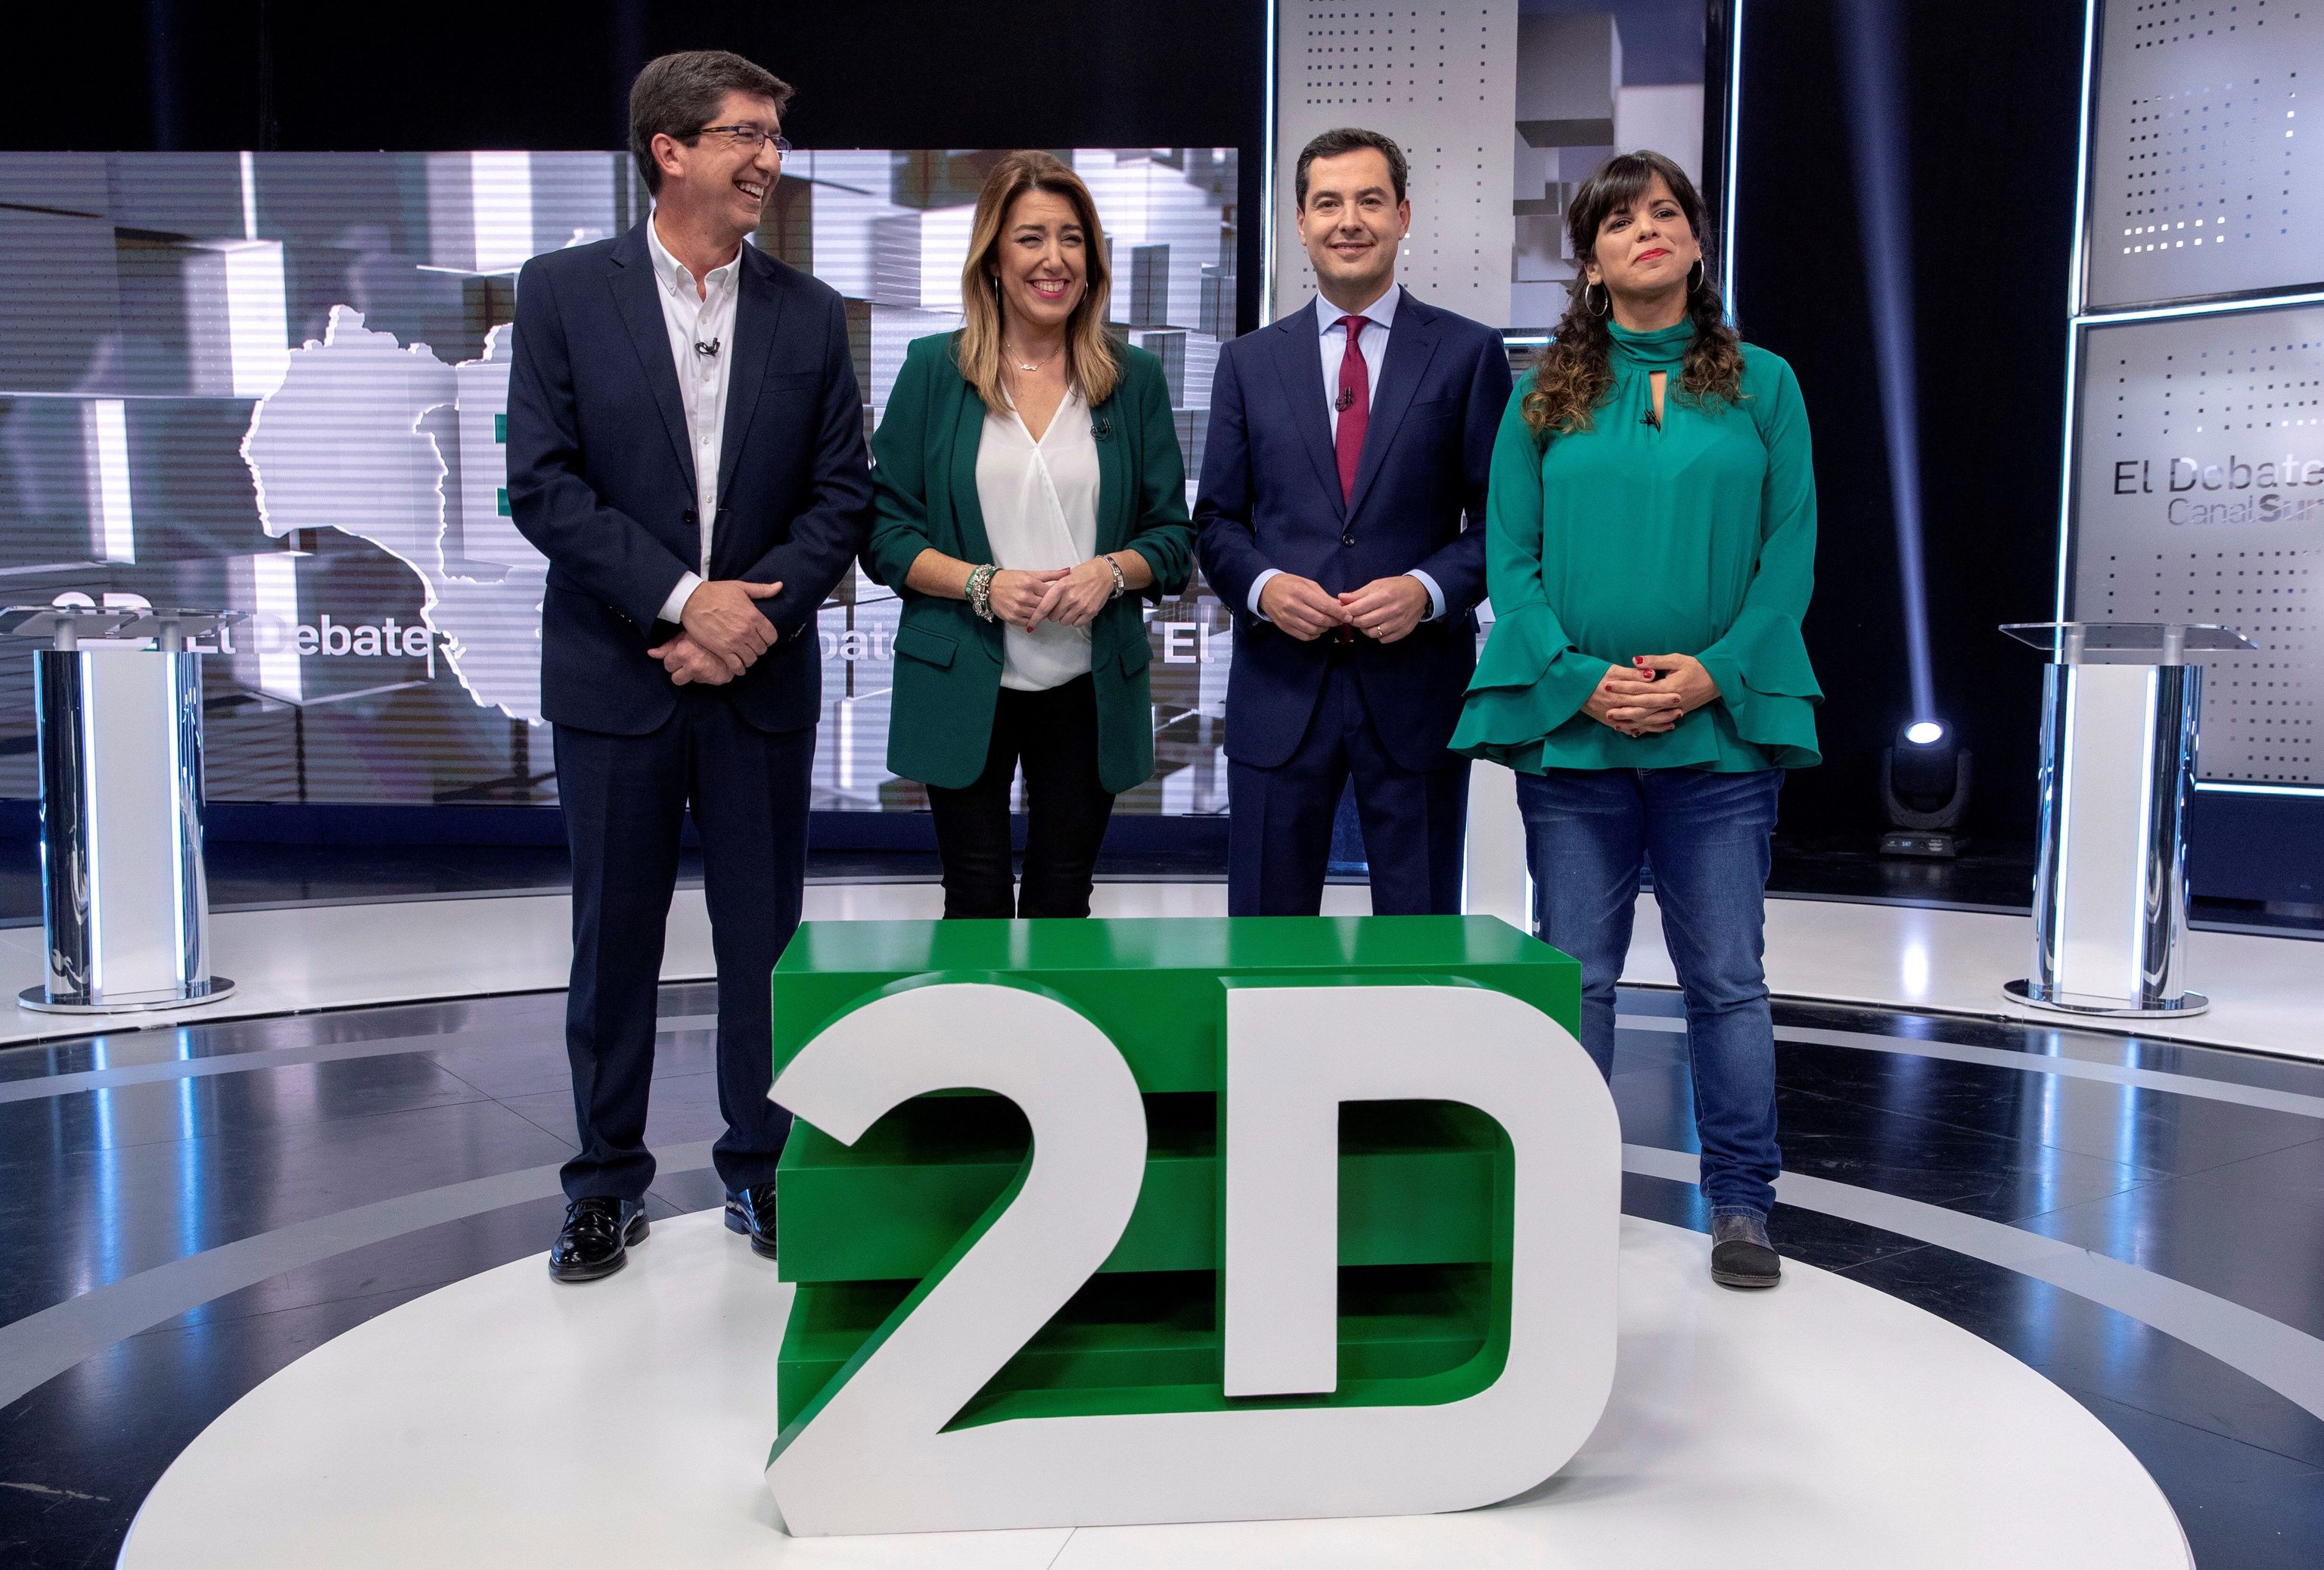 Juan Marn, Susana Daz, Juanma Moreno y Teresa Rodrguez en el debate de Canal Sur de las pasadas elecciones.